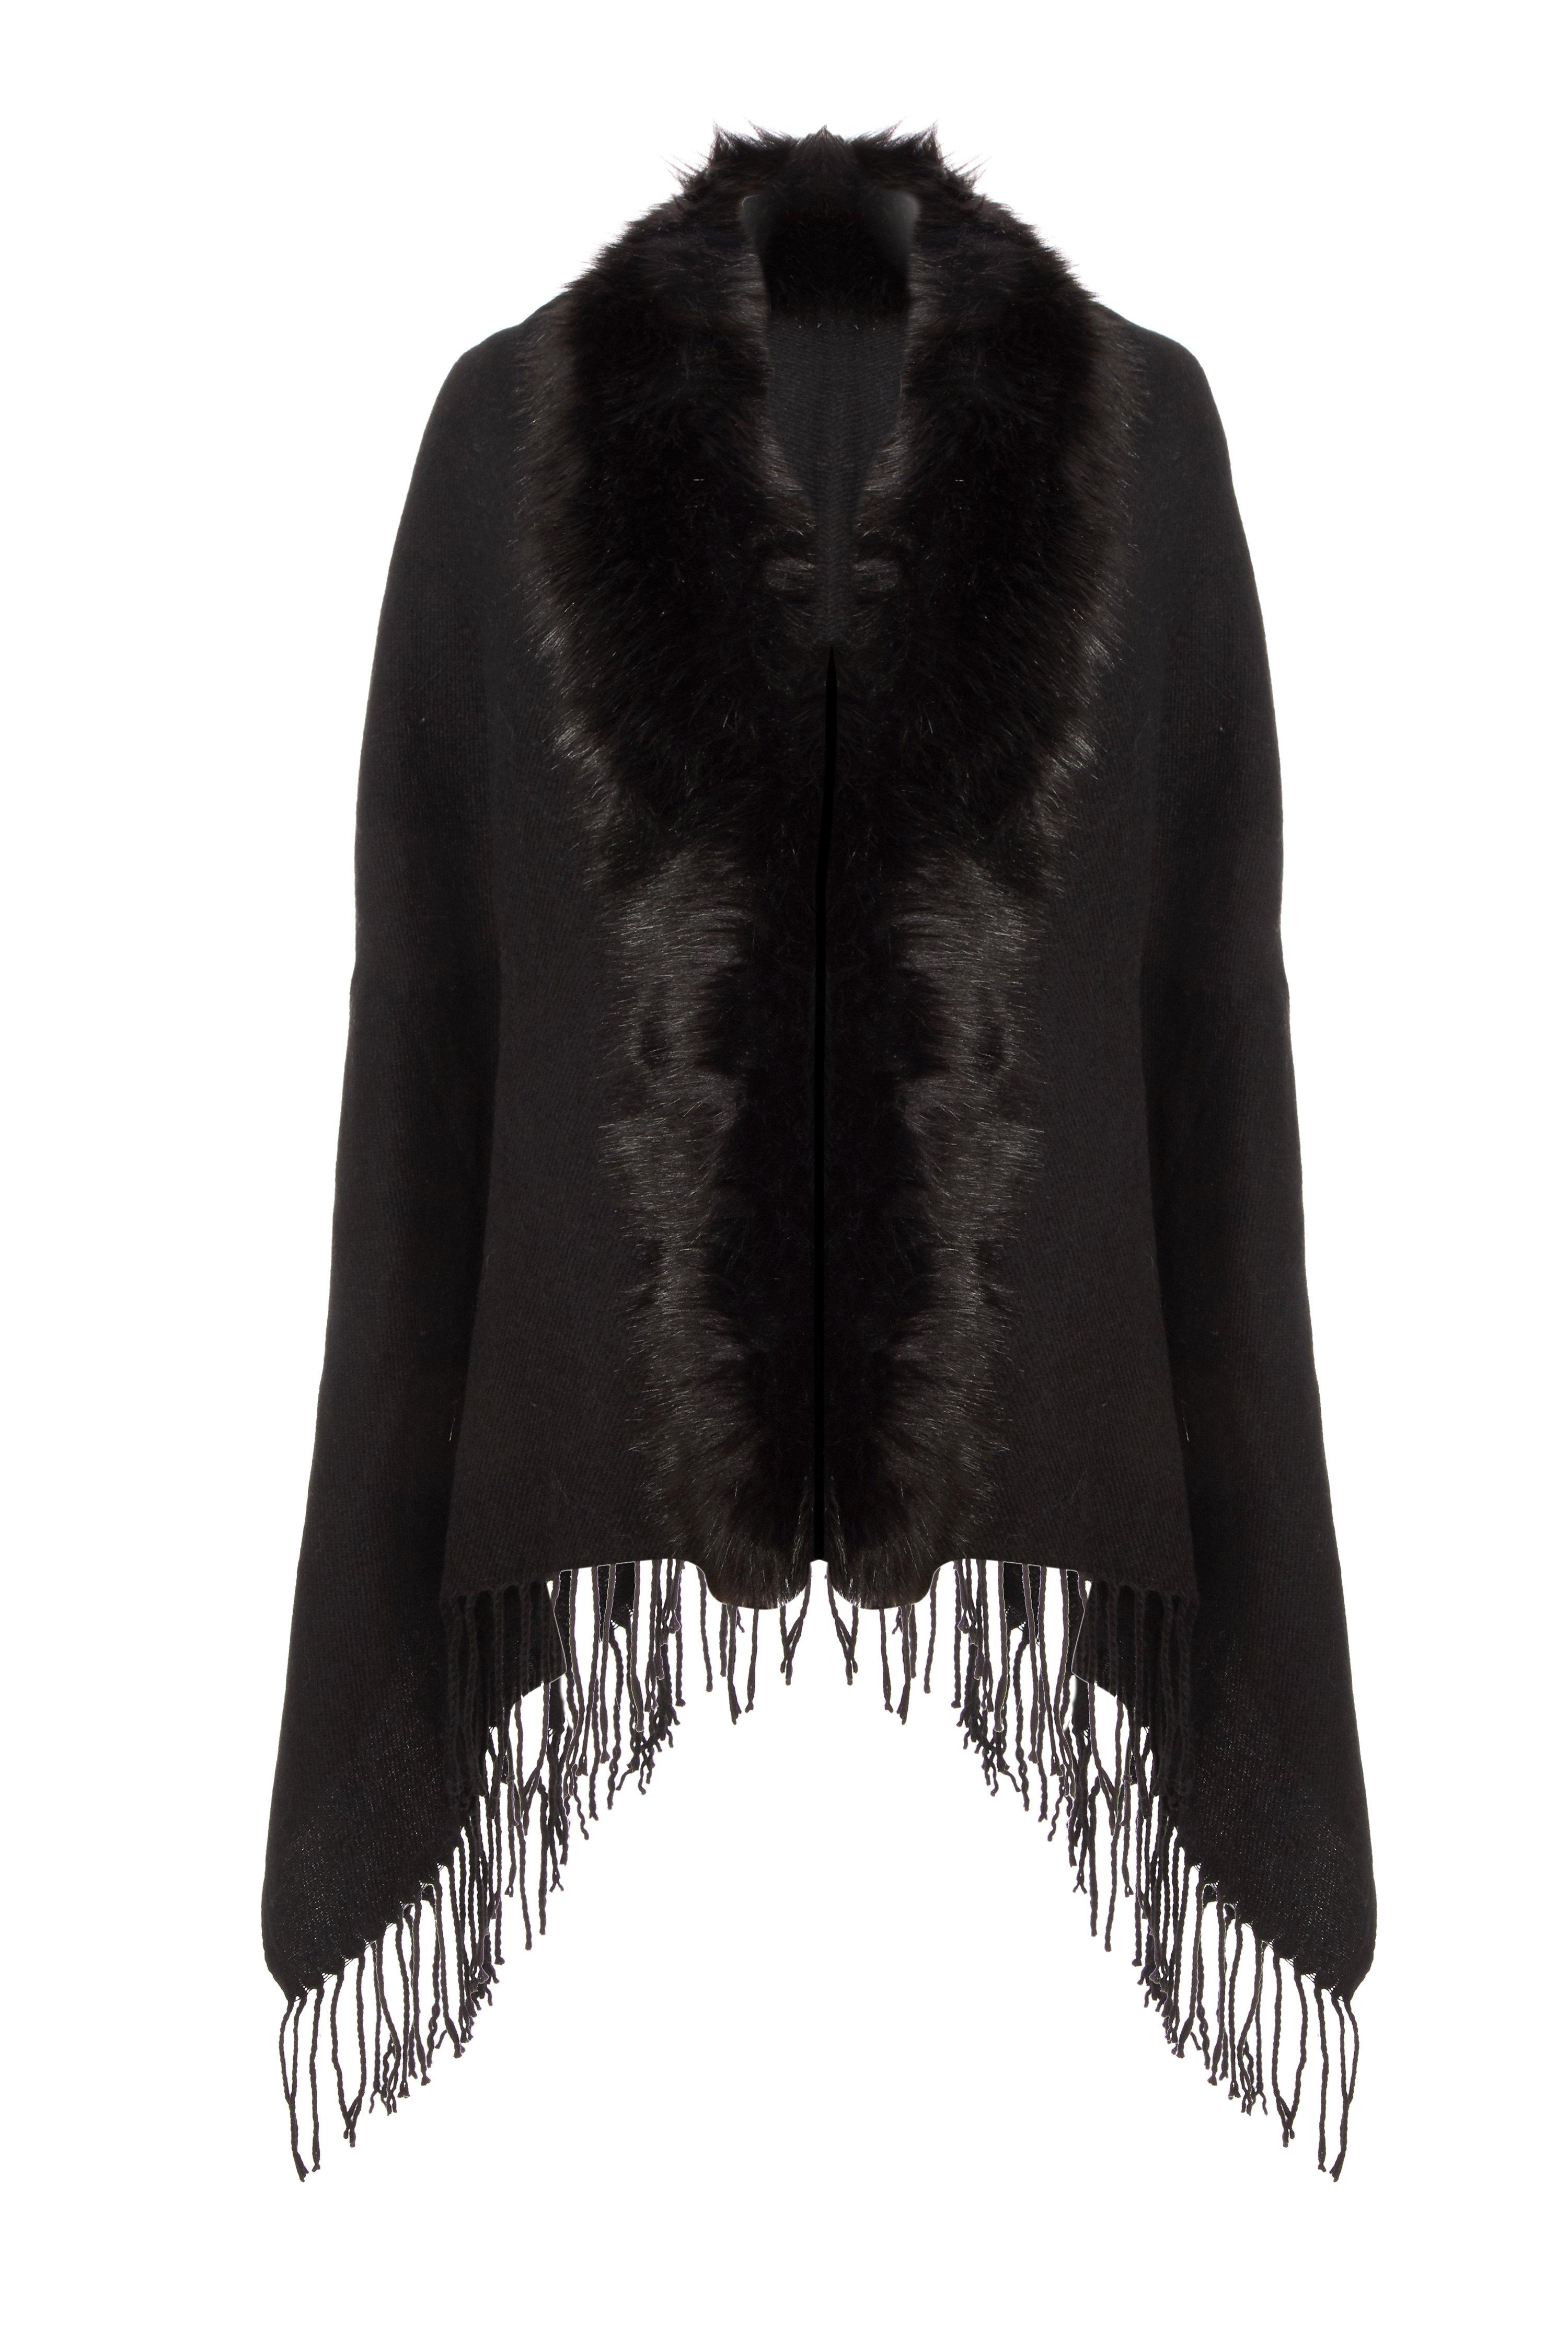 Black Faux Fur Cape - Quiz Clothing